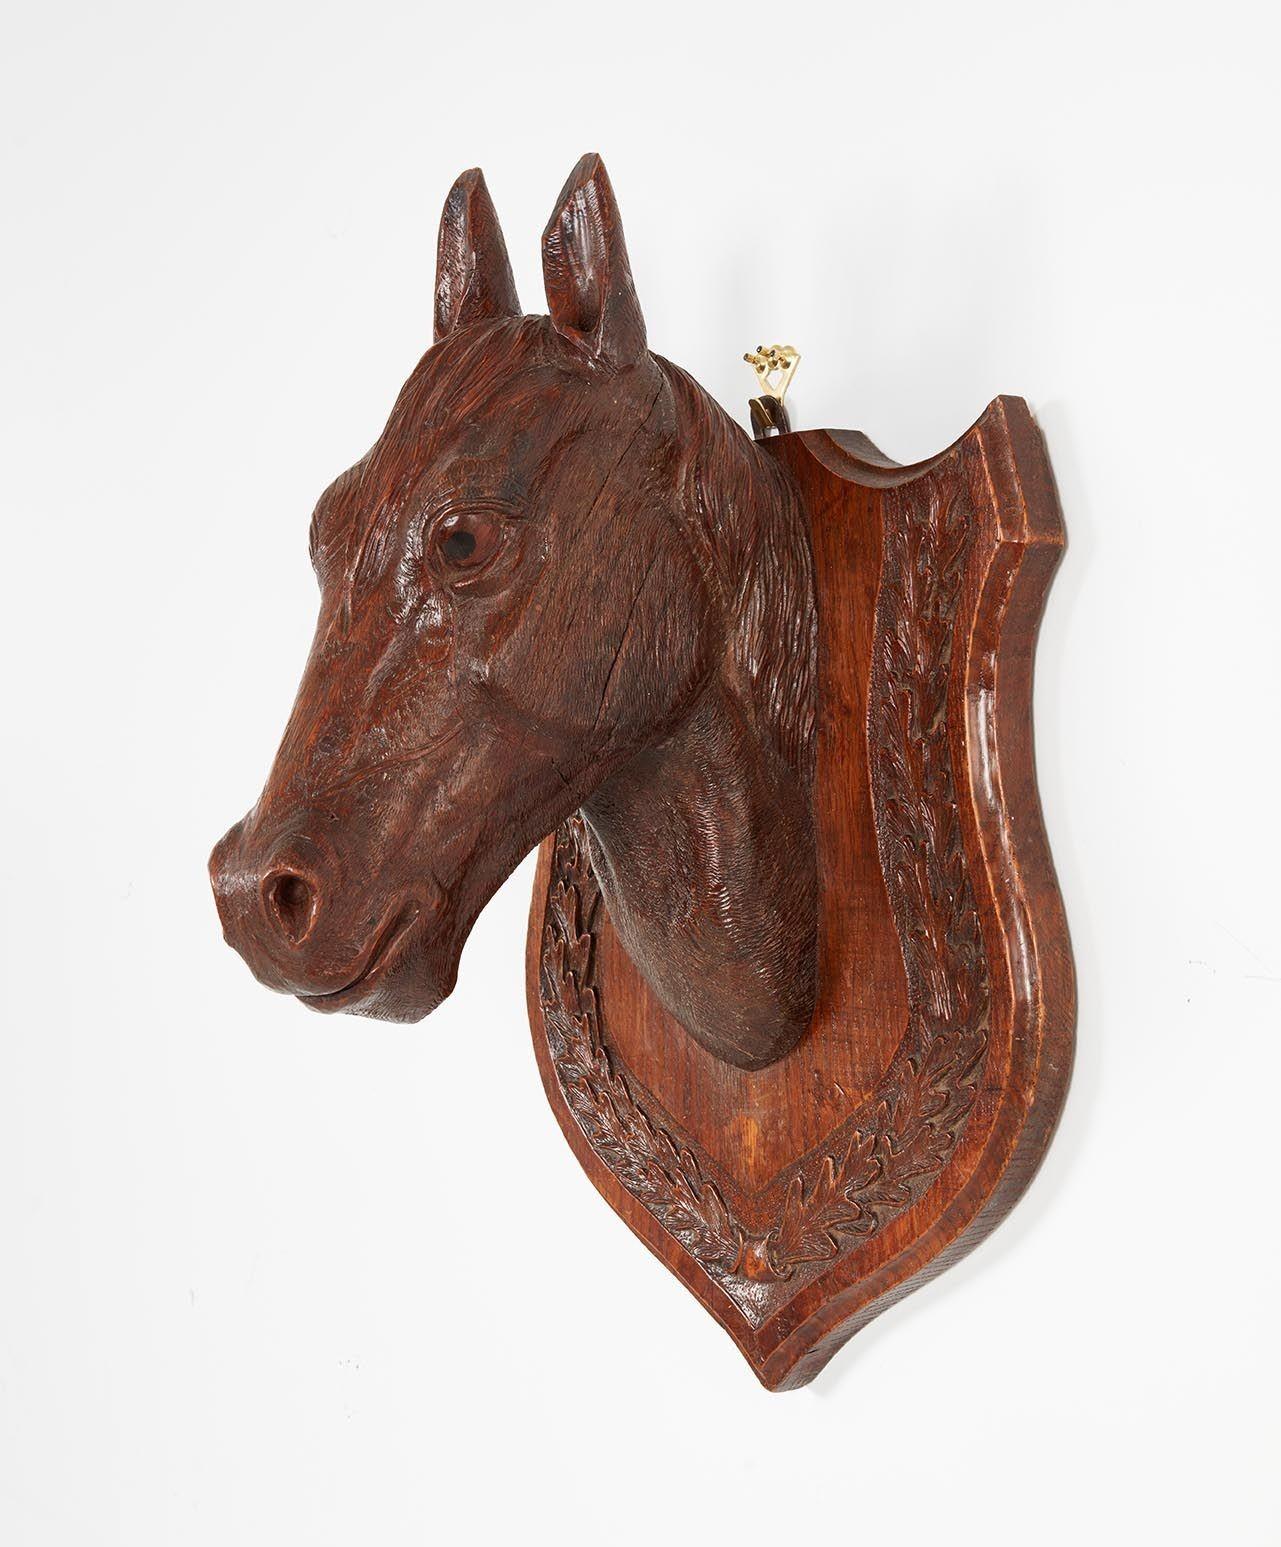 Ein Pferdestall-Maskottchen eines Champion-Pferdes, fein geschnitzt in englischer Eiche, das sein waches, ausdrucksstarkes Gesicht mit viel Liebe zum Detail einfängt. Glasaugen. Montiert auf einem Schild mit geschnitztem Lorbeerkranzrand. Sehr gute